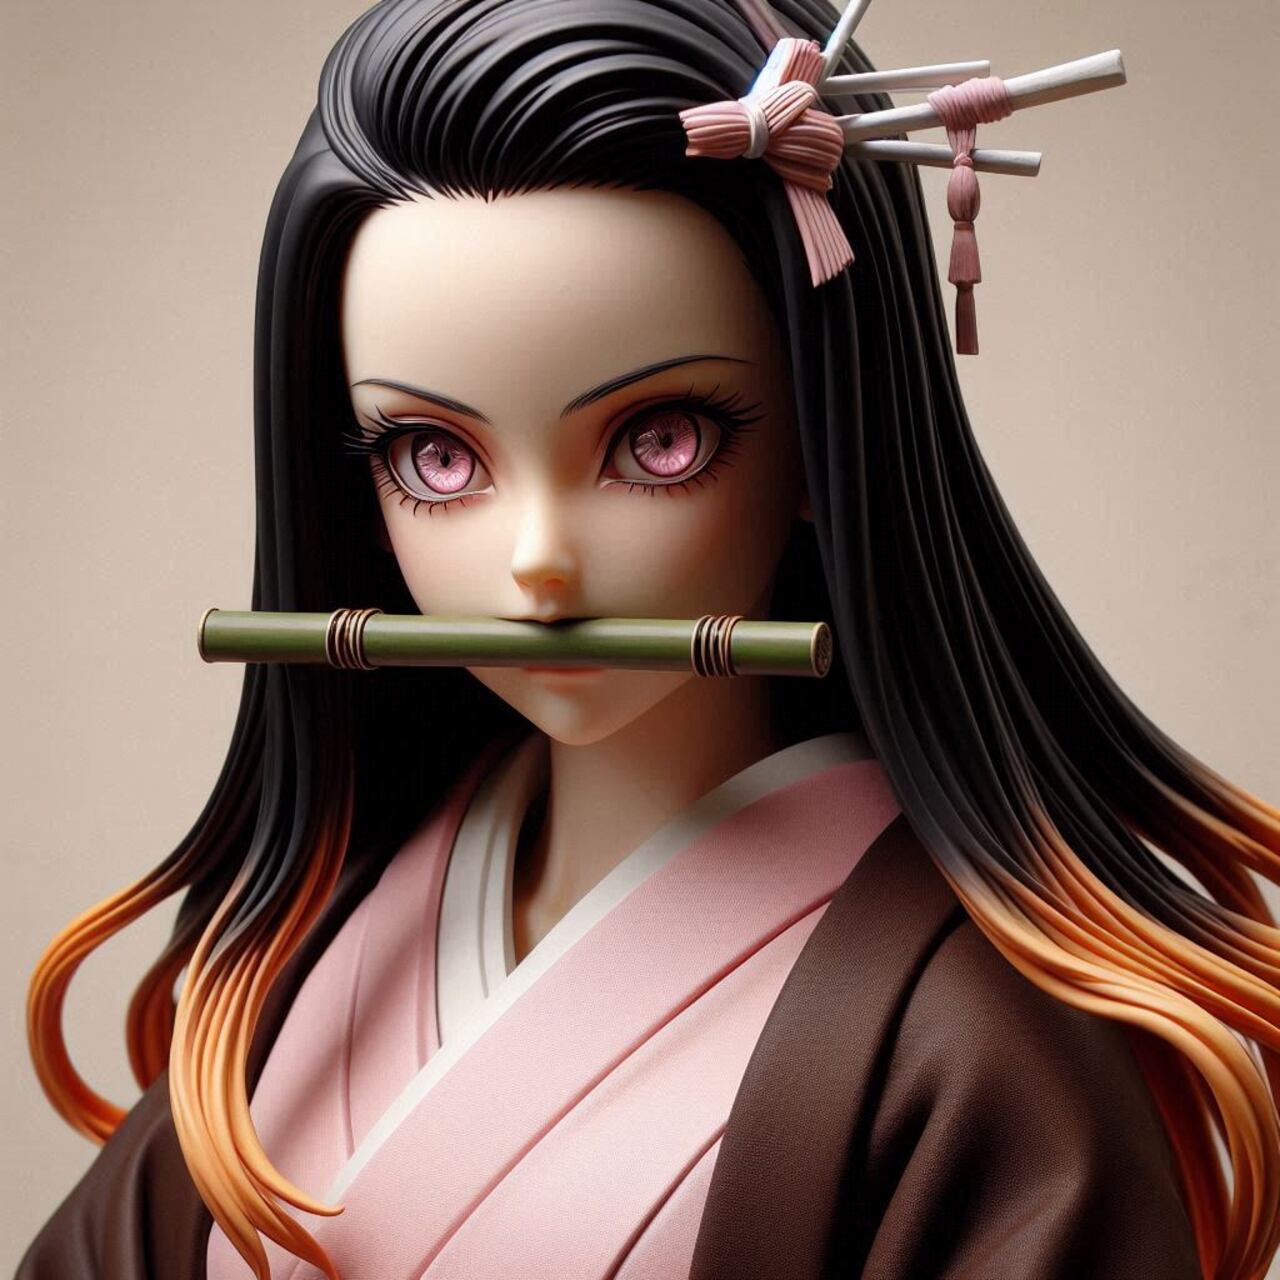 Es la hermana menor de Tanjiro, conocida por su transformación en demonio y su lucha por mantener su humanidad.